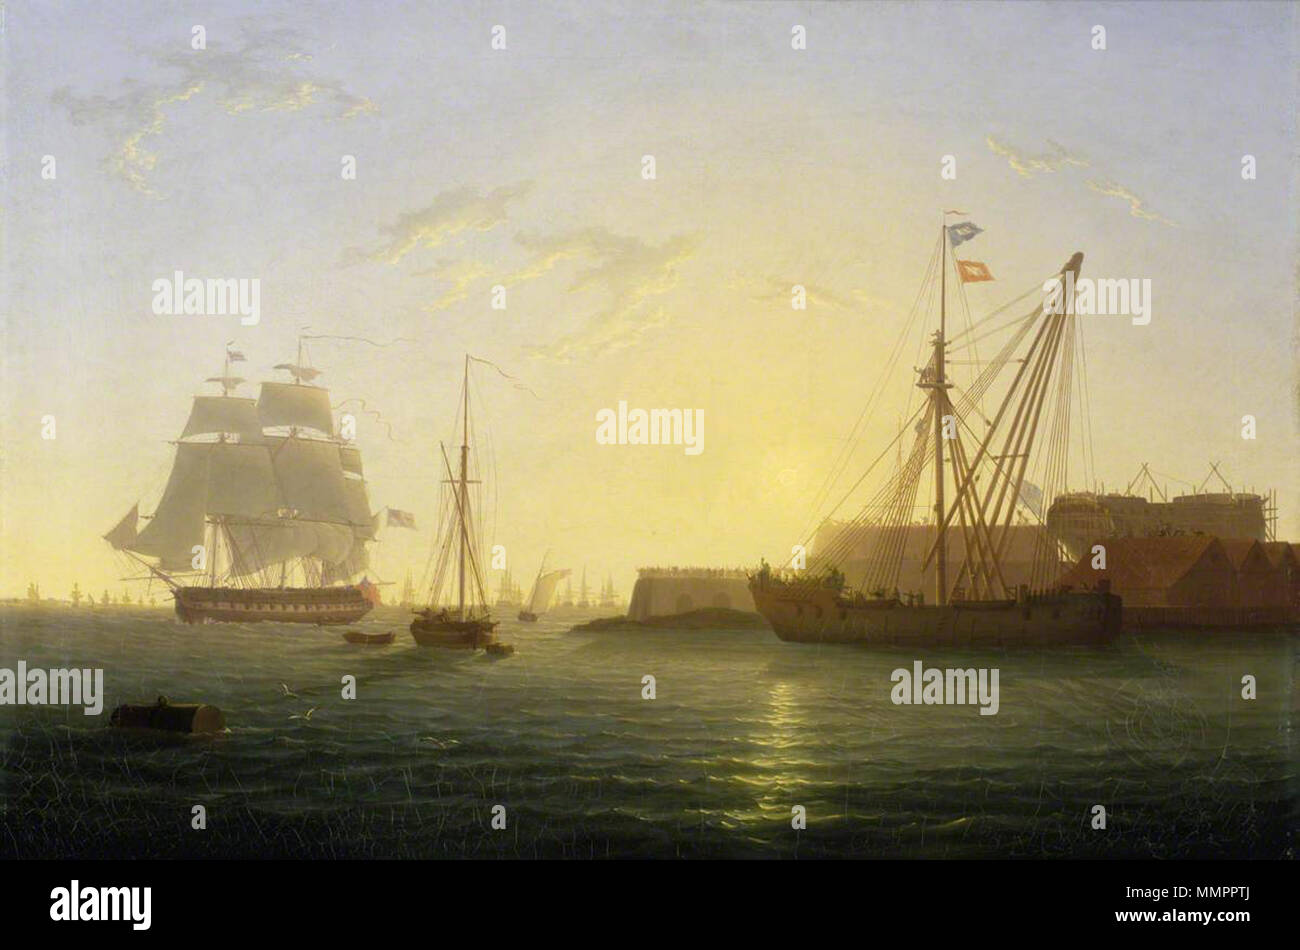 . Englisch: HMS 'Clyde' Ankunft in Sheerness nach dem "Nore" Meuterei, 30. Mai 1797. Die 'Clyde' dargestellt Ankommen bei Sonnenaufgang in der Medway, Sheerness Dockyard. Sie ist im mittleren linken Abstand, in Port-Bow View auf der Steuerbord, fliegt eine weiße Fahne, sondern mit einem roten hängt über ihr Hafen Viertel auf der Schiene als Signal. Näher, Mitte links, ist ein Fräser in Steuerbord - Bow View, günstig eine Boje und mit einem Boot unter ihrem Stern. Links im Vordergrund ist eine große Mooring. Auf der rechten Seite des Bildes, gegen die aufsteigende Sonne, ist eine blosse Hulk für Masting oder de-Masting Schiffe, in b gezeigt wird verwendet Stockfoto